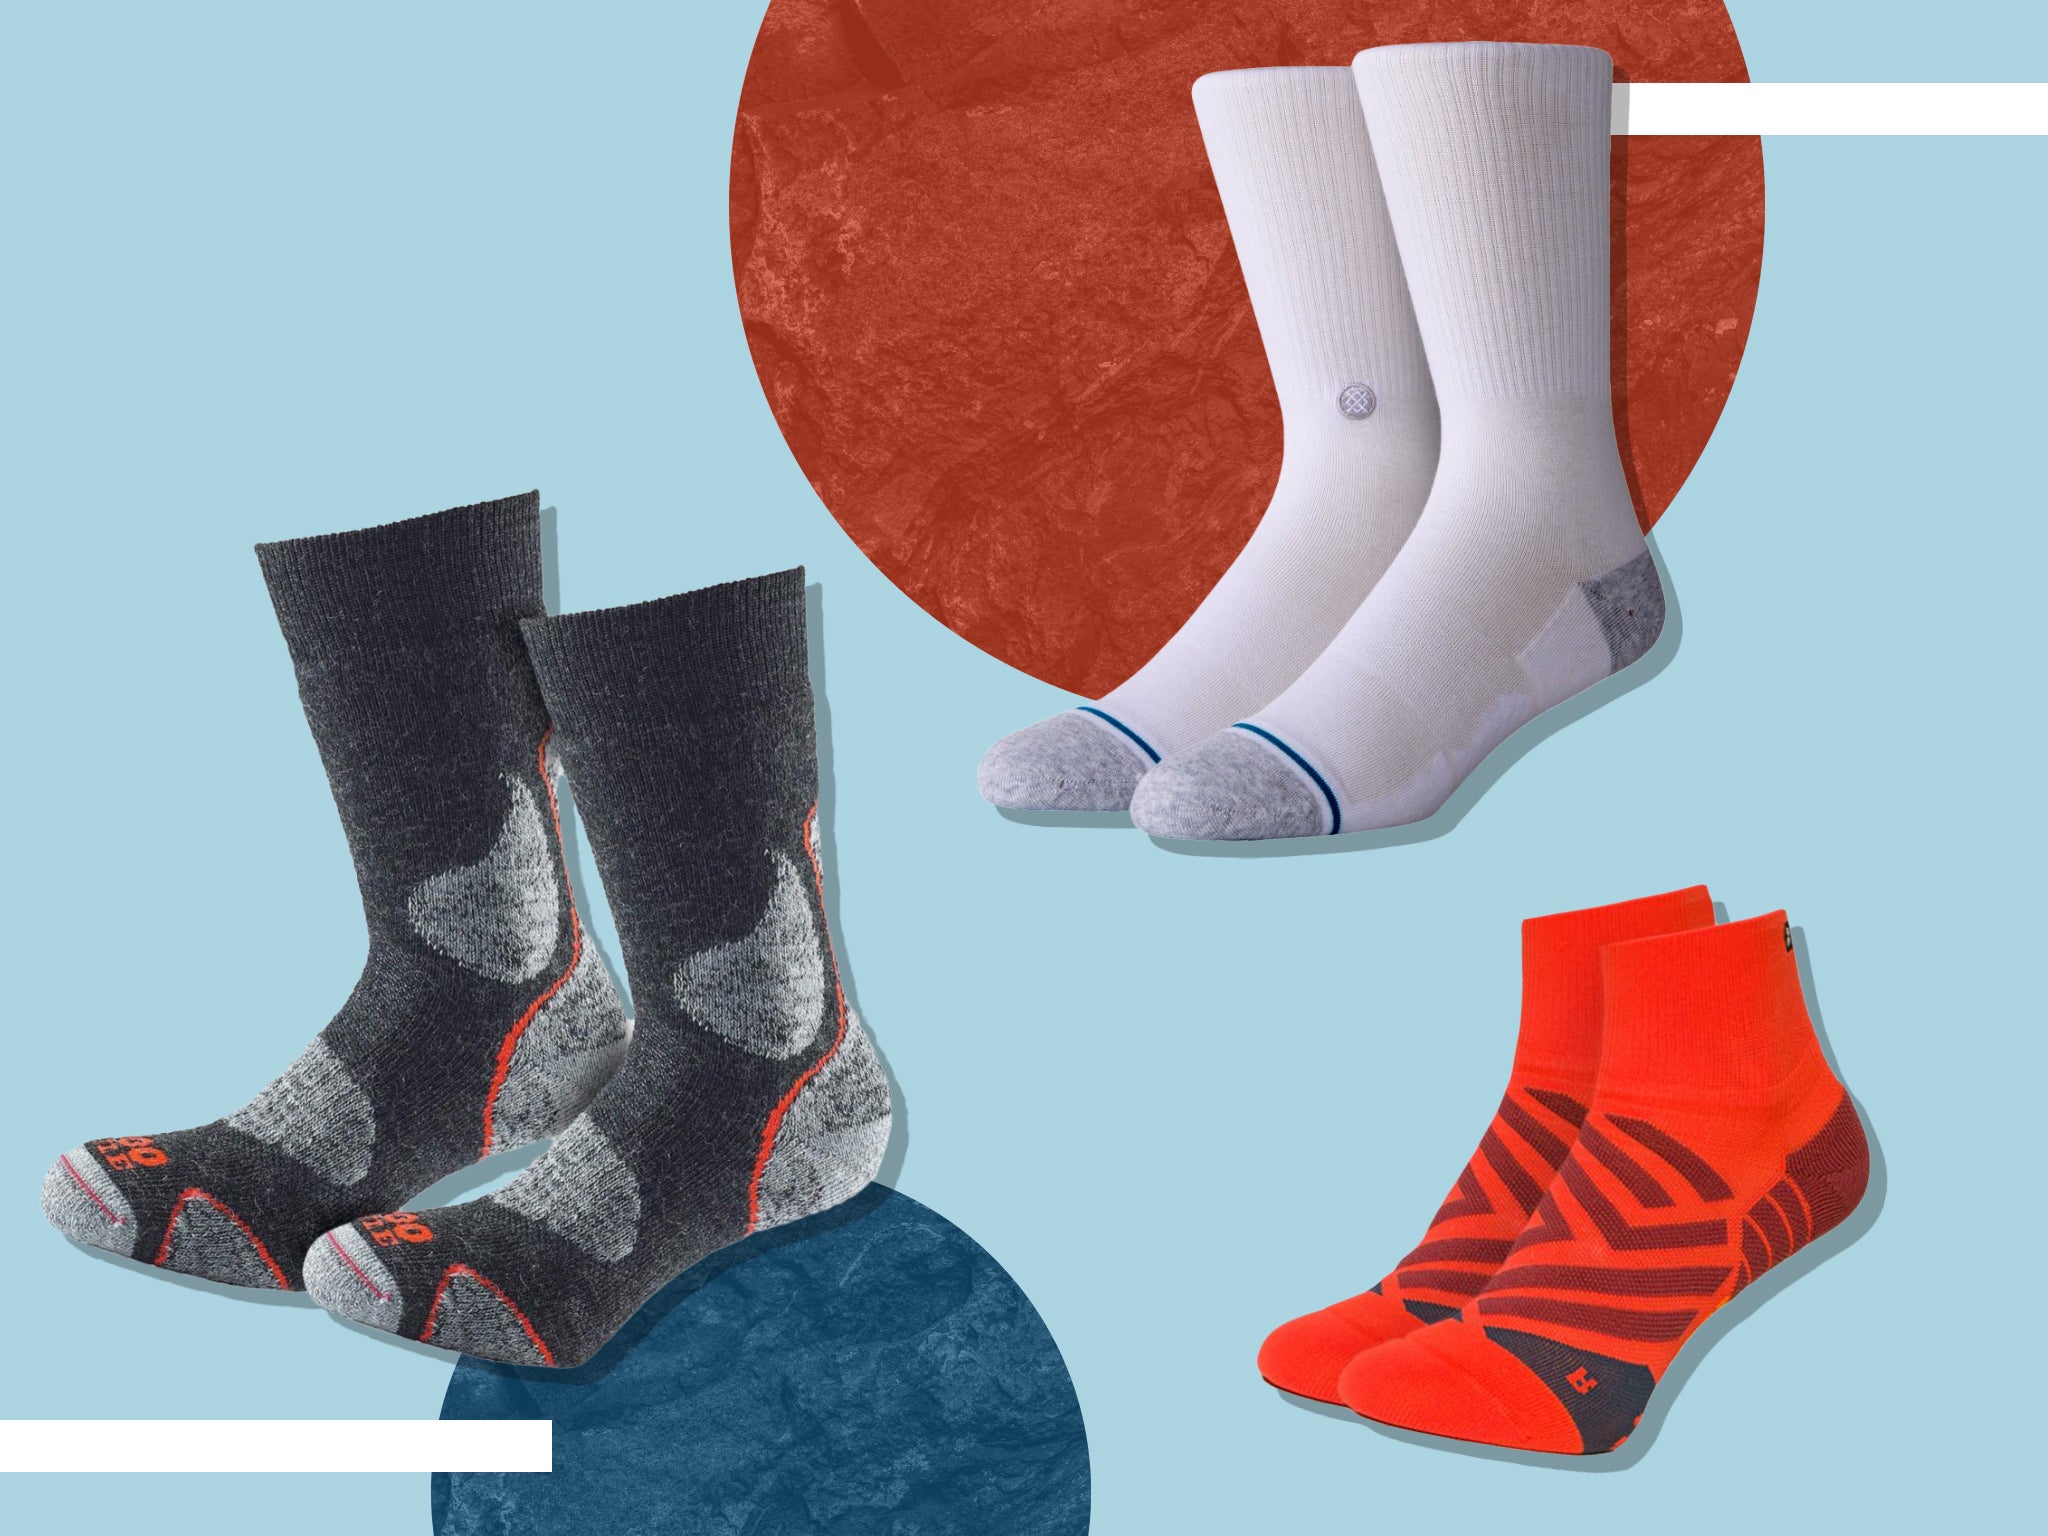 Coding Unisex Comfort Cushion Casual Socks For Men Women Dress Socks Unisex Crew Socks 